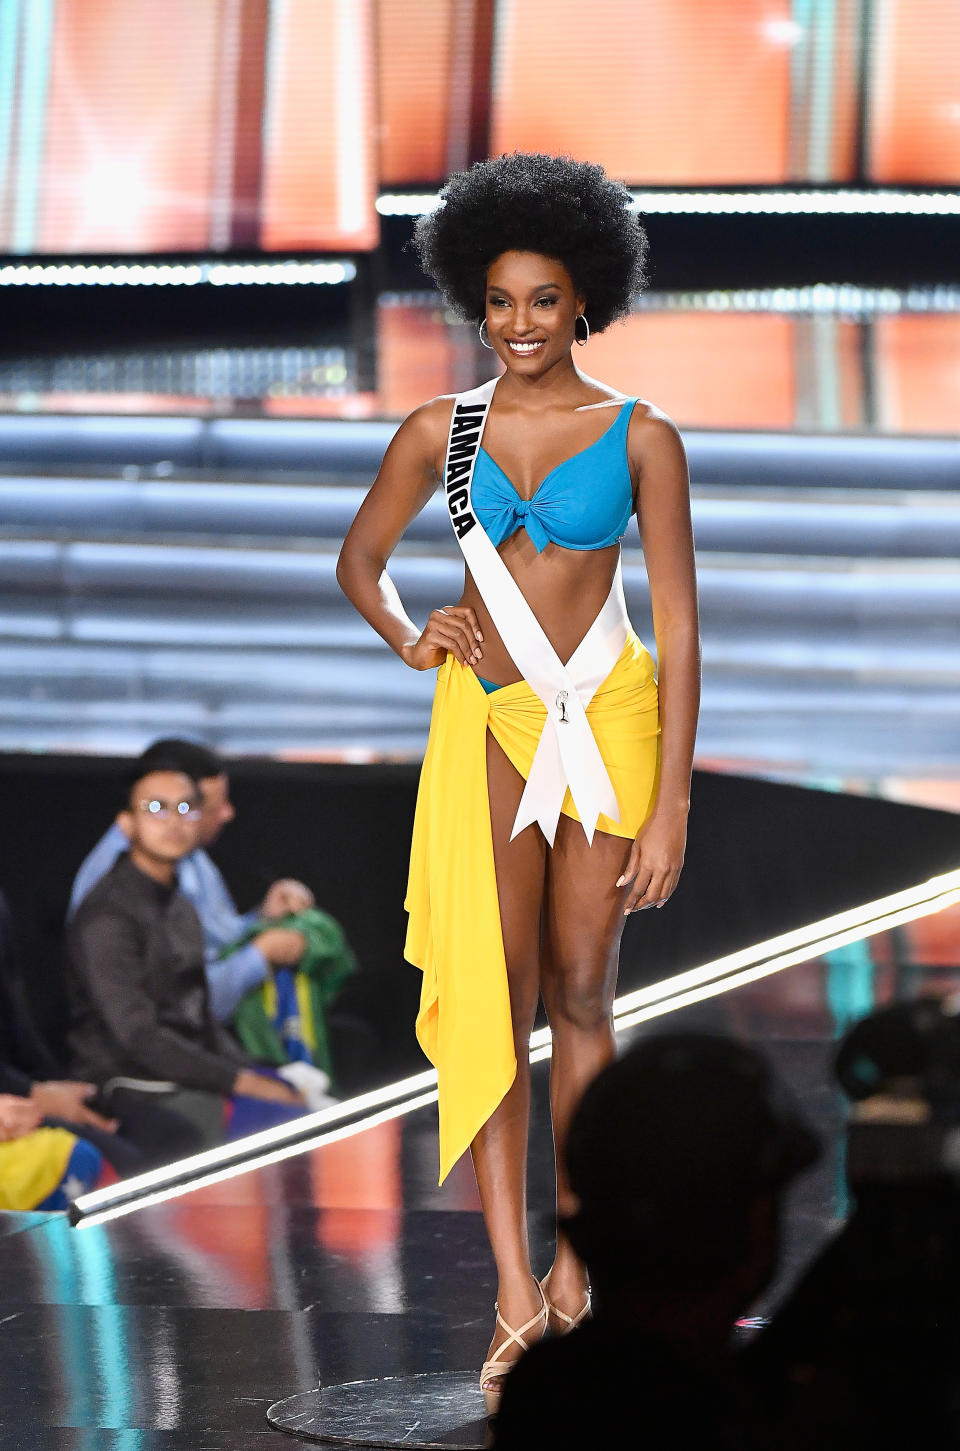 Muchos fans alrededor del mundo daba por seguro el triunfo de la Miss Jamaica, Davina Benett, quien al final ocupó la tercera posición/Getty Images